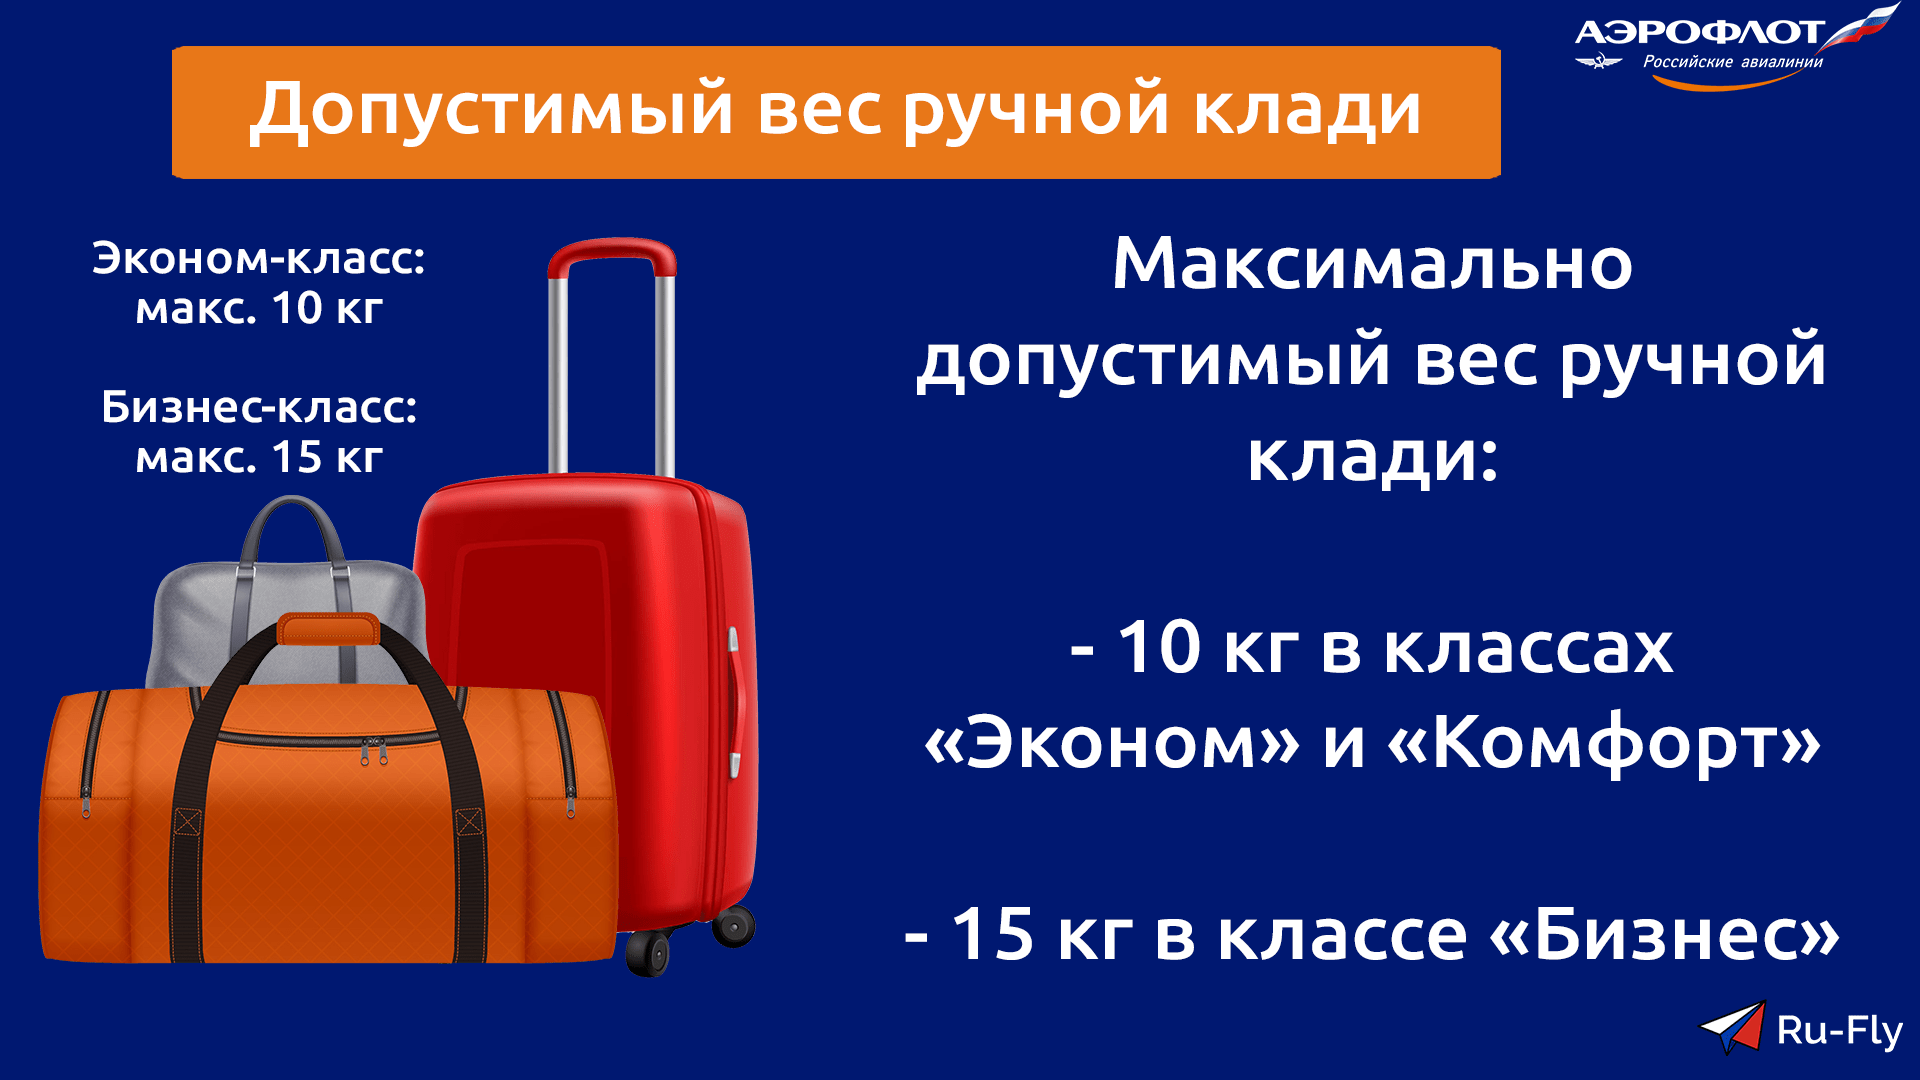 Транзитный рейс: стыковочный рейс и пересадочный рейс, багаж